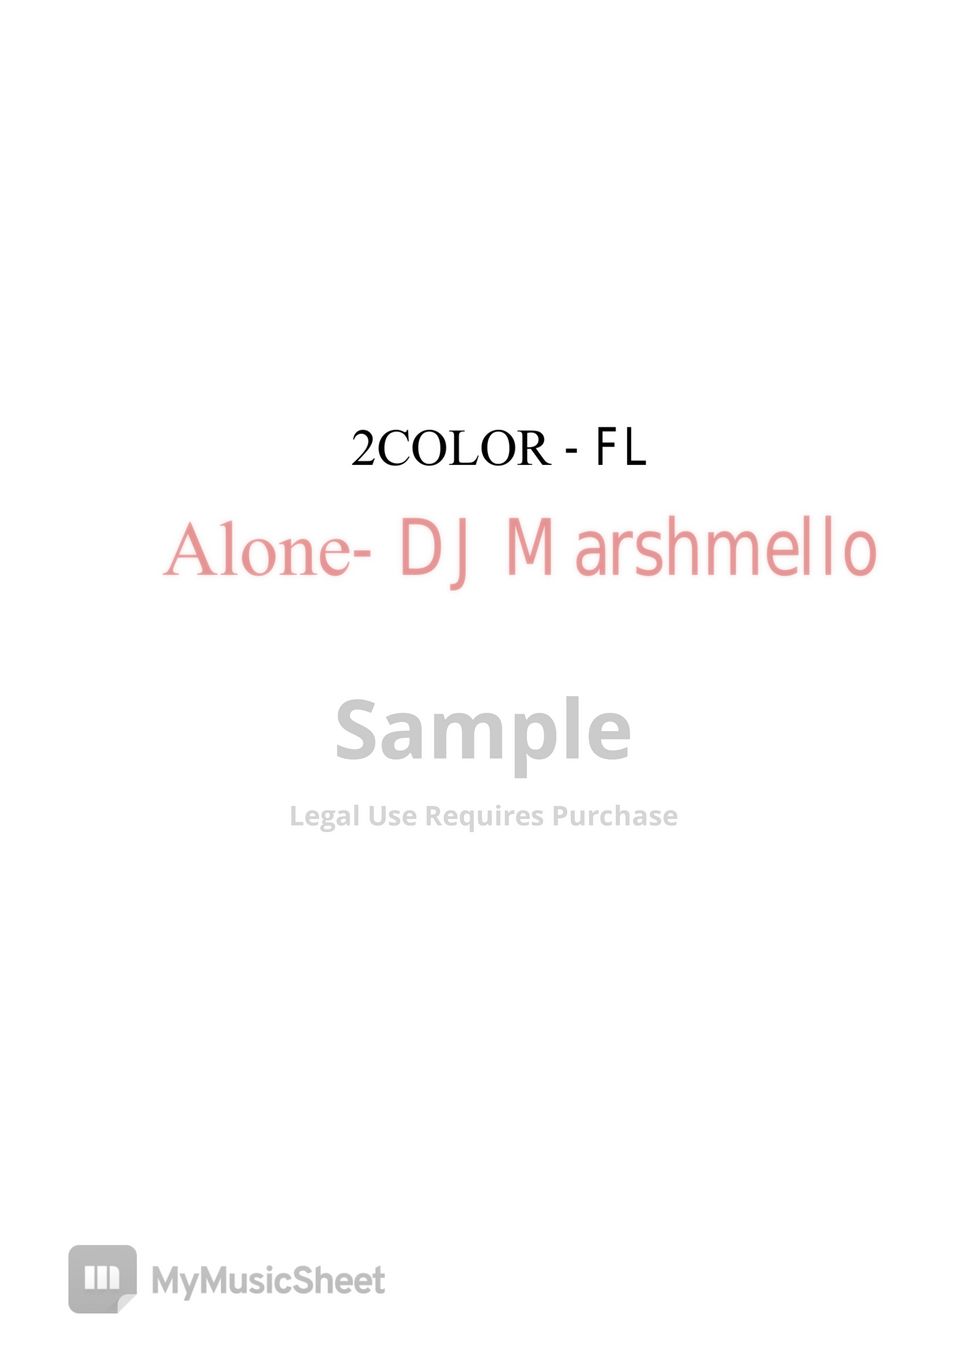 DJ.Marshmello - Alone (VIOLIN, FLUTE) by 2COLOR